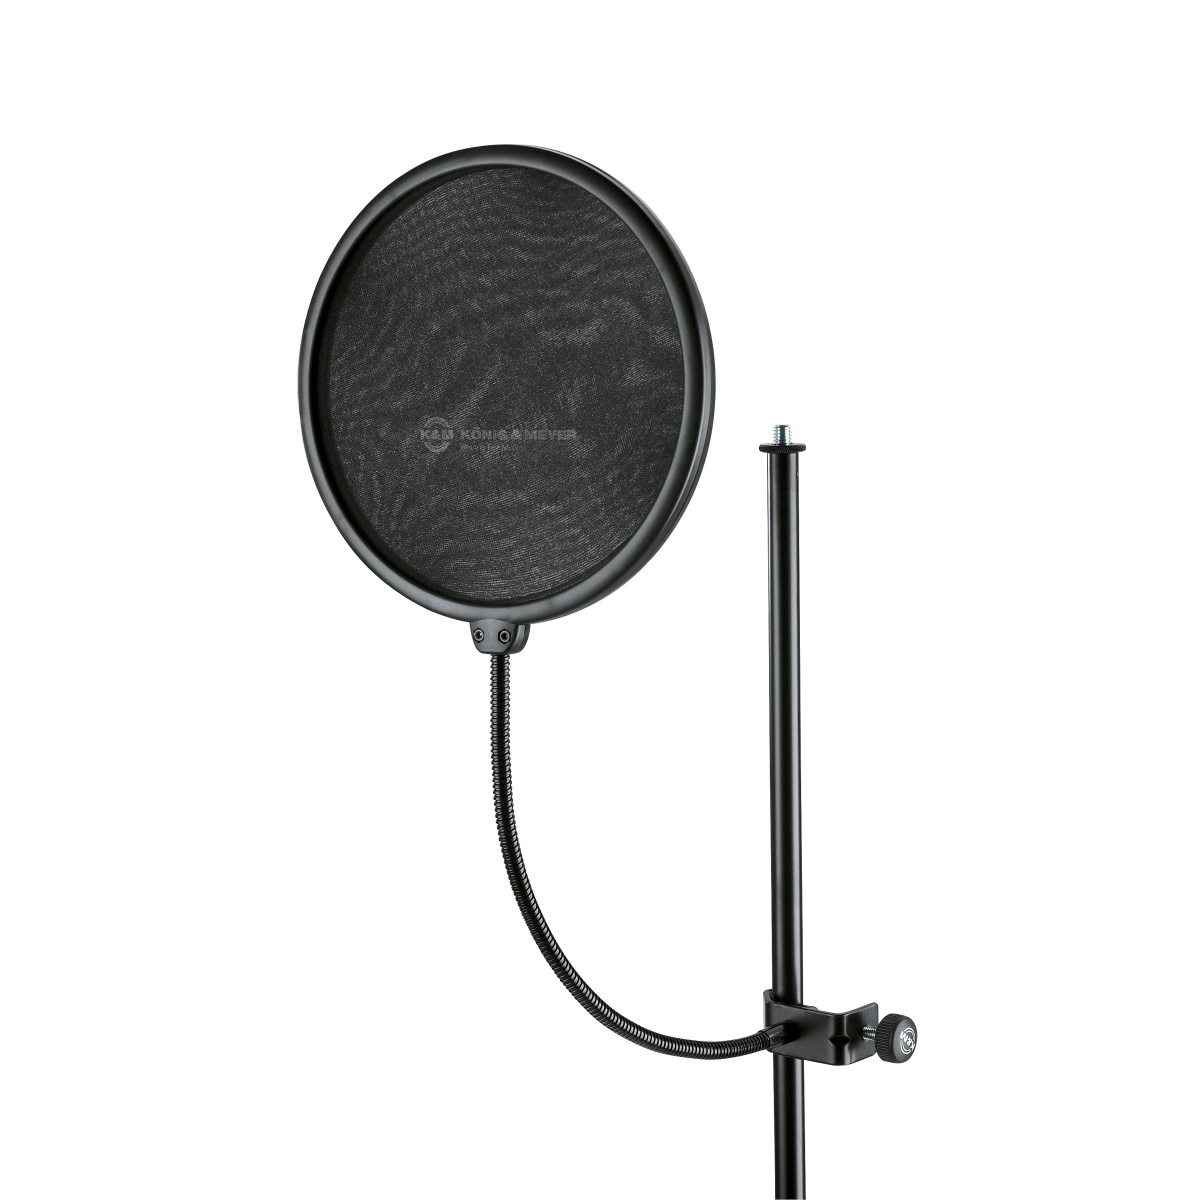 Аксессуары для микрофонов K&M 23966-000-55 акустический экран pts akmp с металлическим держателем микрофона на усиленном пантографе